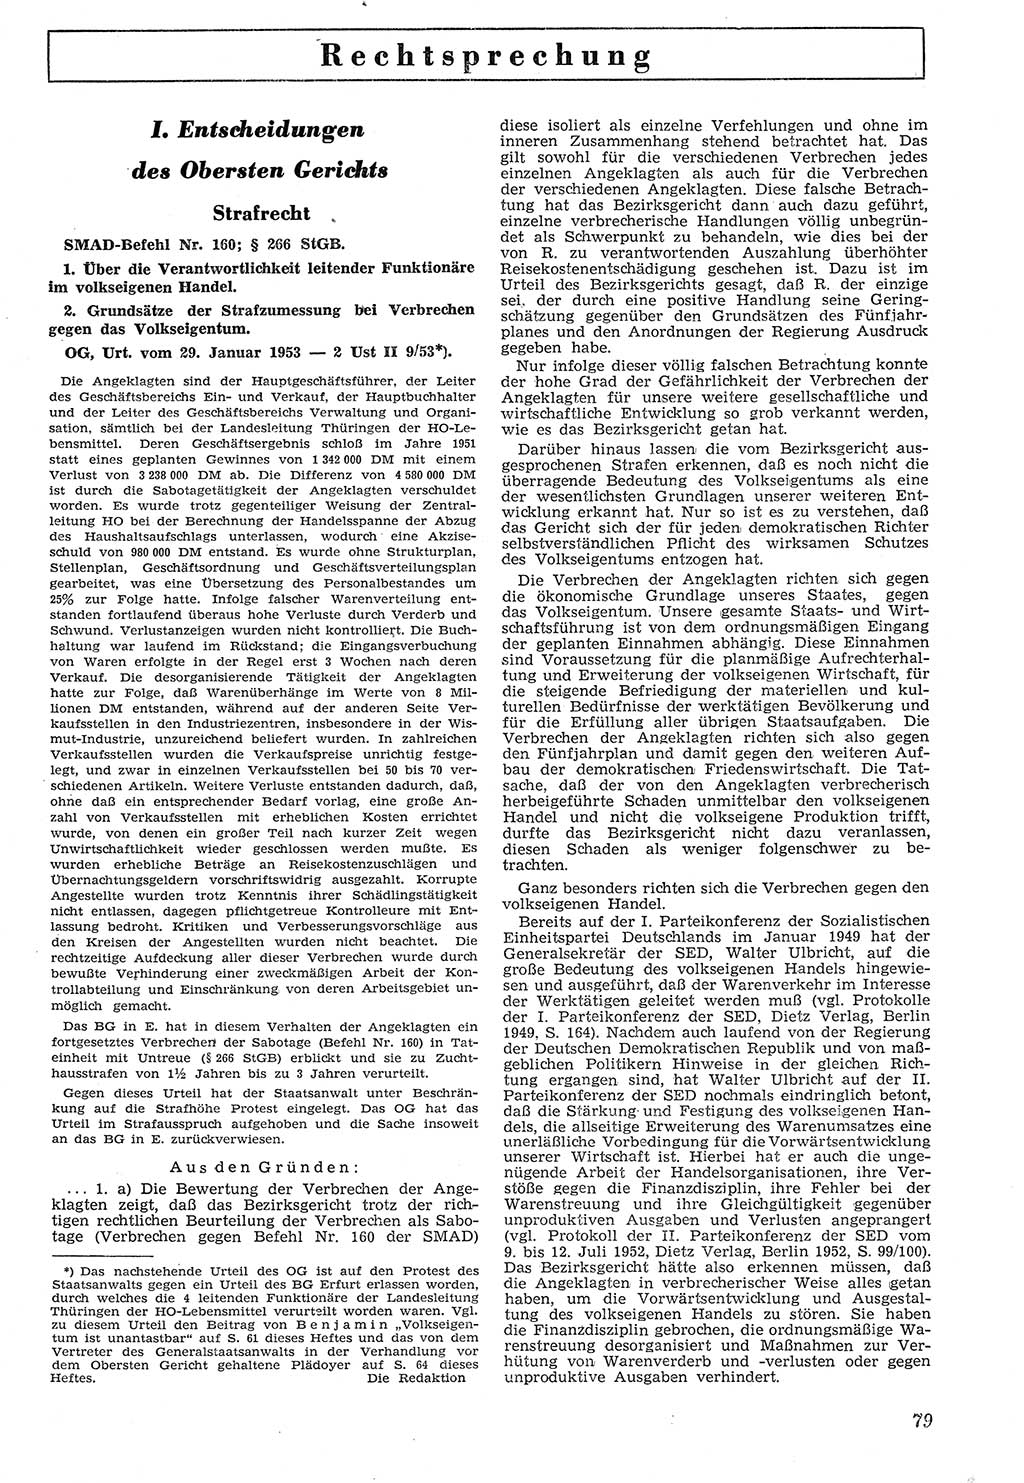 Neue Justiz (NJ), Zeitschrift für Recht und Rechtswissenschaft [Deutsche Demokratische Republik (DDR)], 7. Jahrgang 1953, Seite 79 (NJ DDR 1953, S. 79)